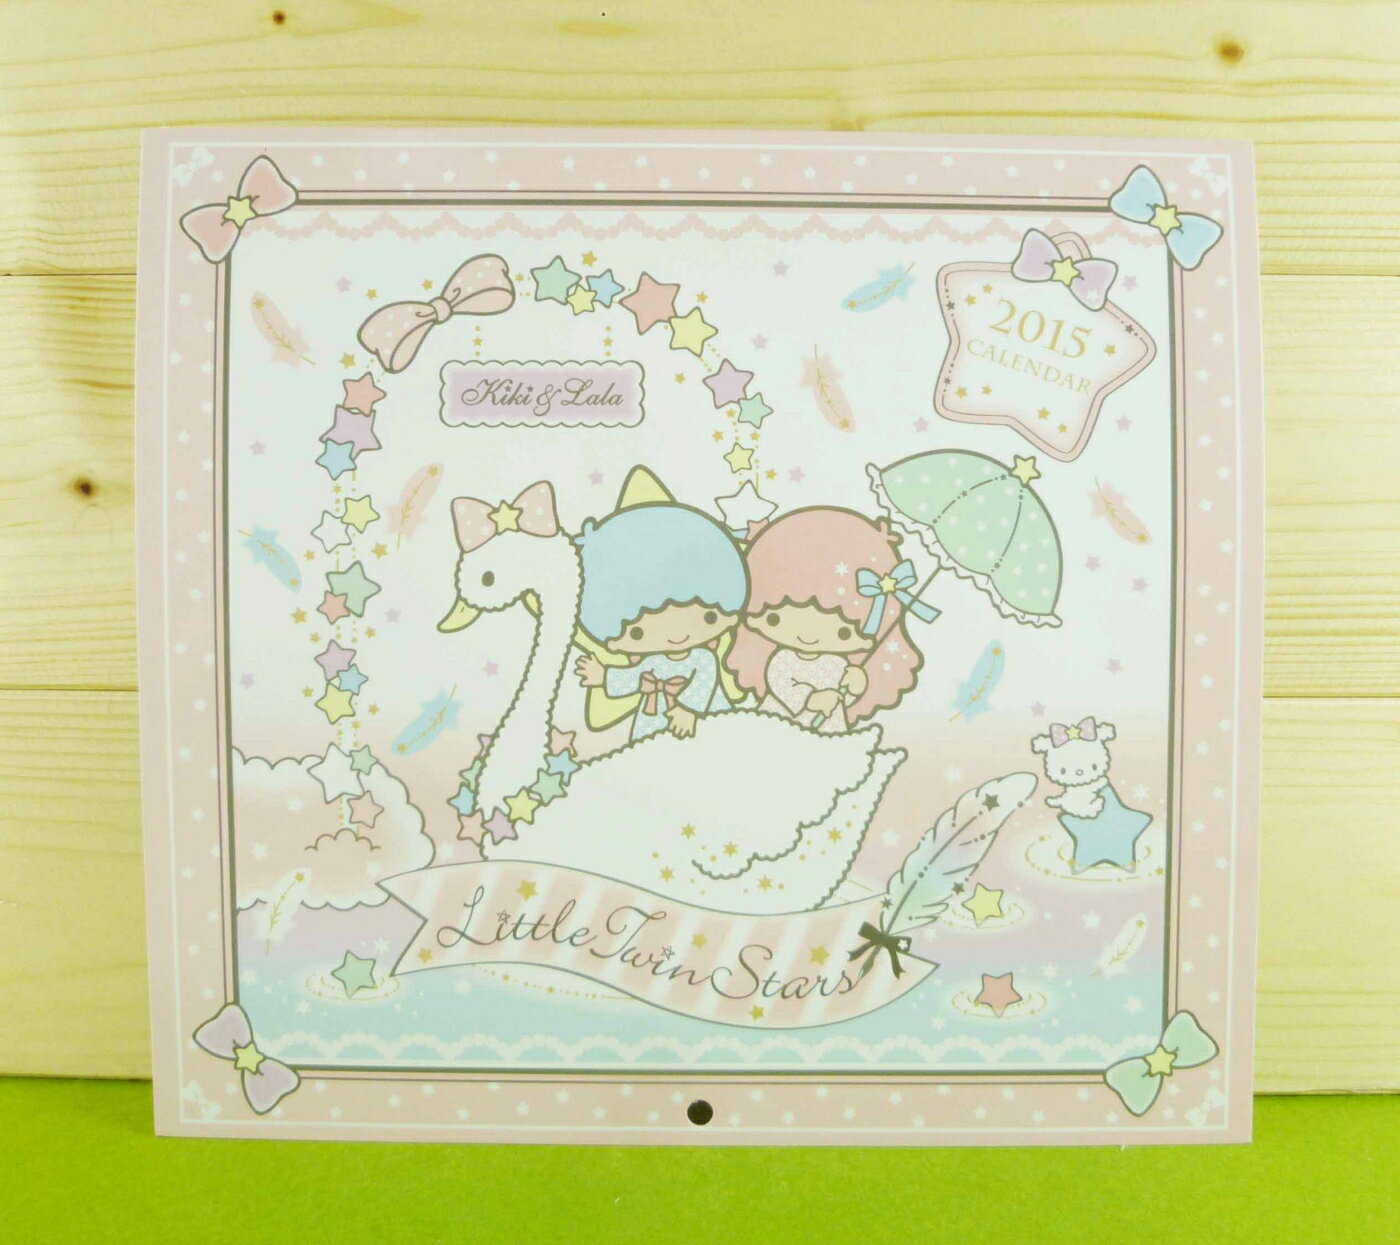 【震撼精品百貨】Little Twin Stars KiKi&LaLa 雙子星小天使 雙面卡片-粉天鵝 震撼日式精品百貨